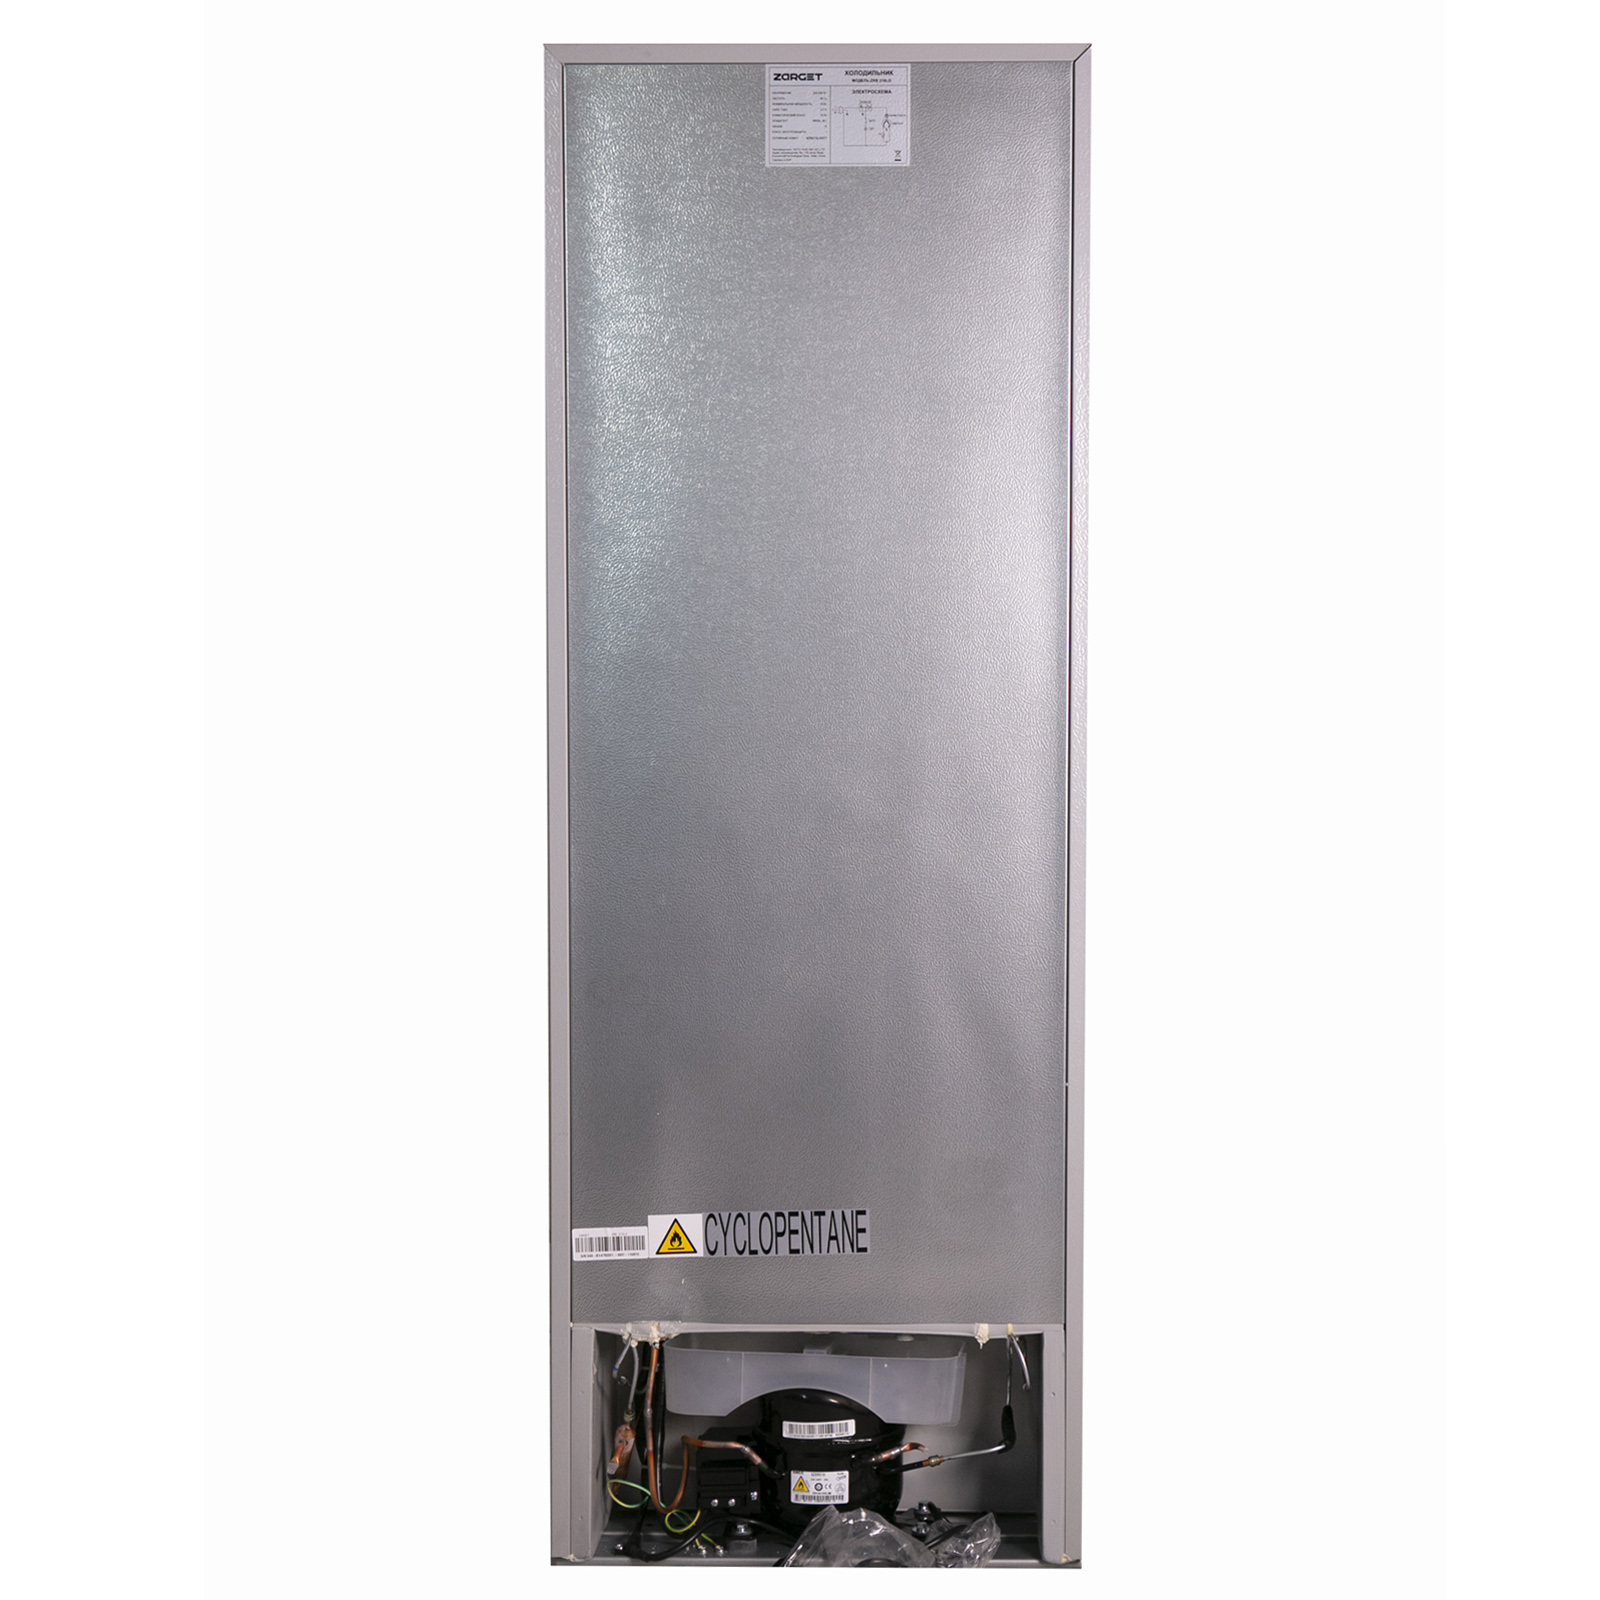 Холодильник Zarget ZRB 210 LG